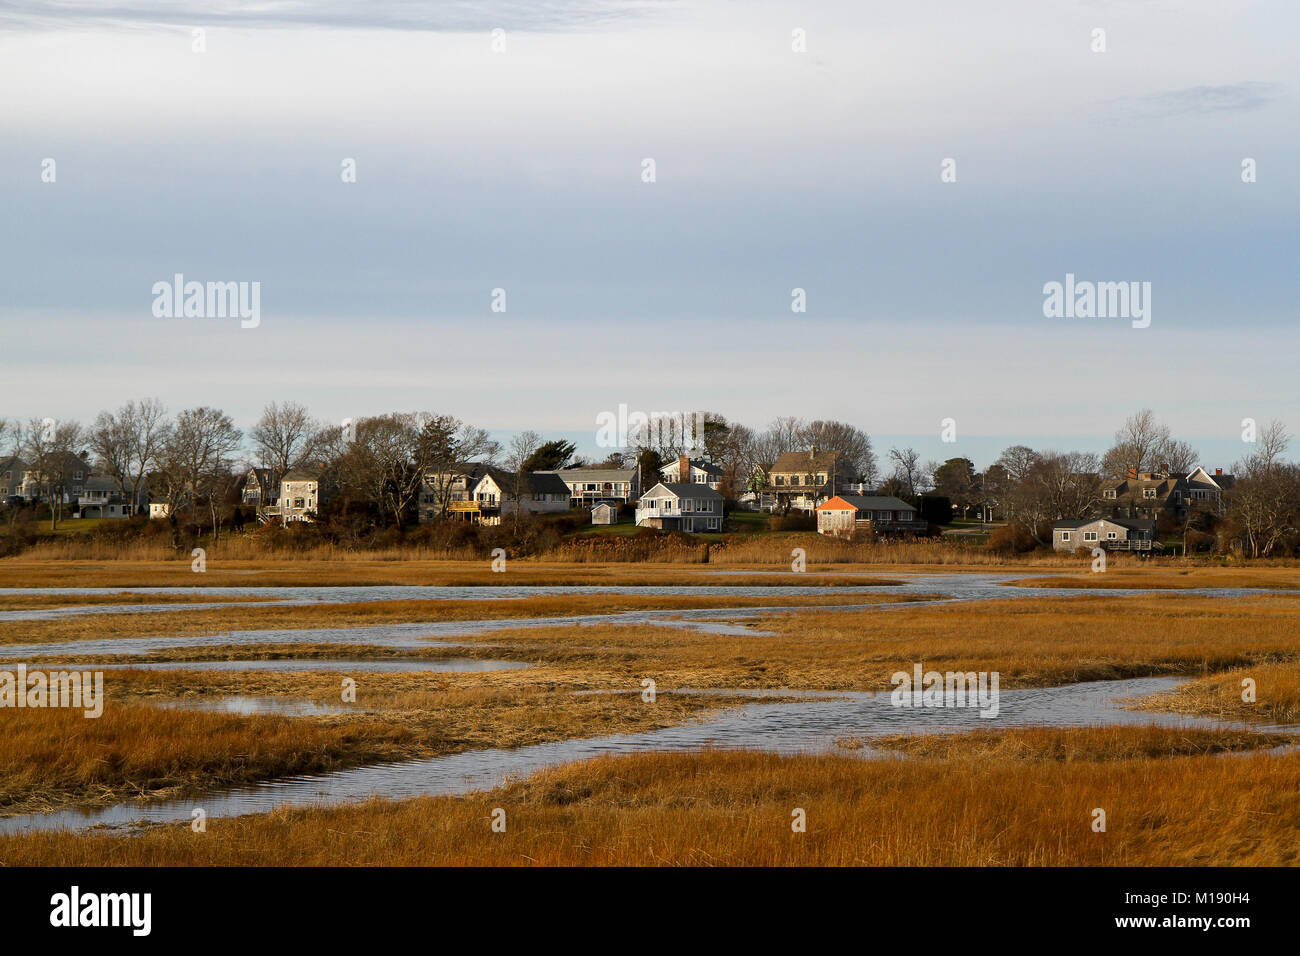 Maisons sur le marais, vue de la promenade, Sandwich, Cape Cod, Massachusetts, United States Banque D'Images